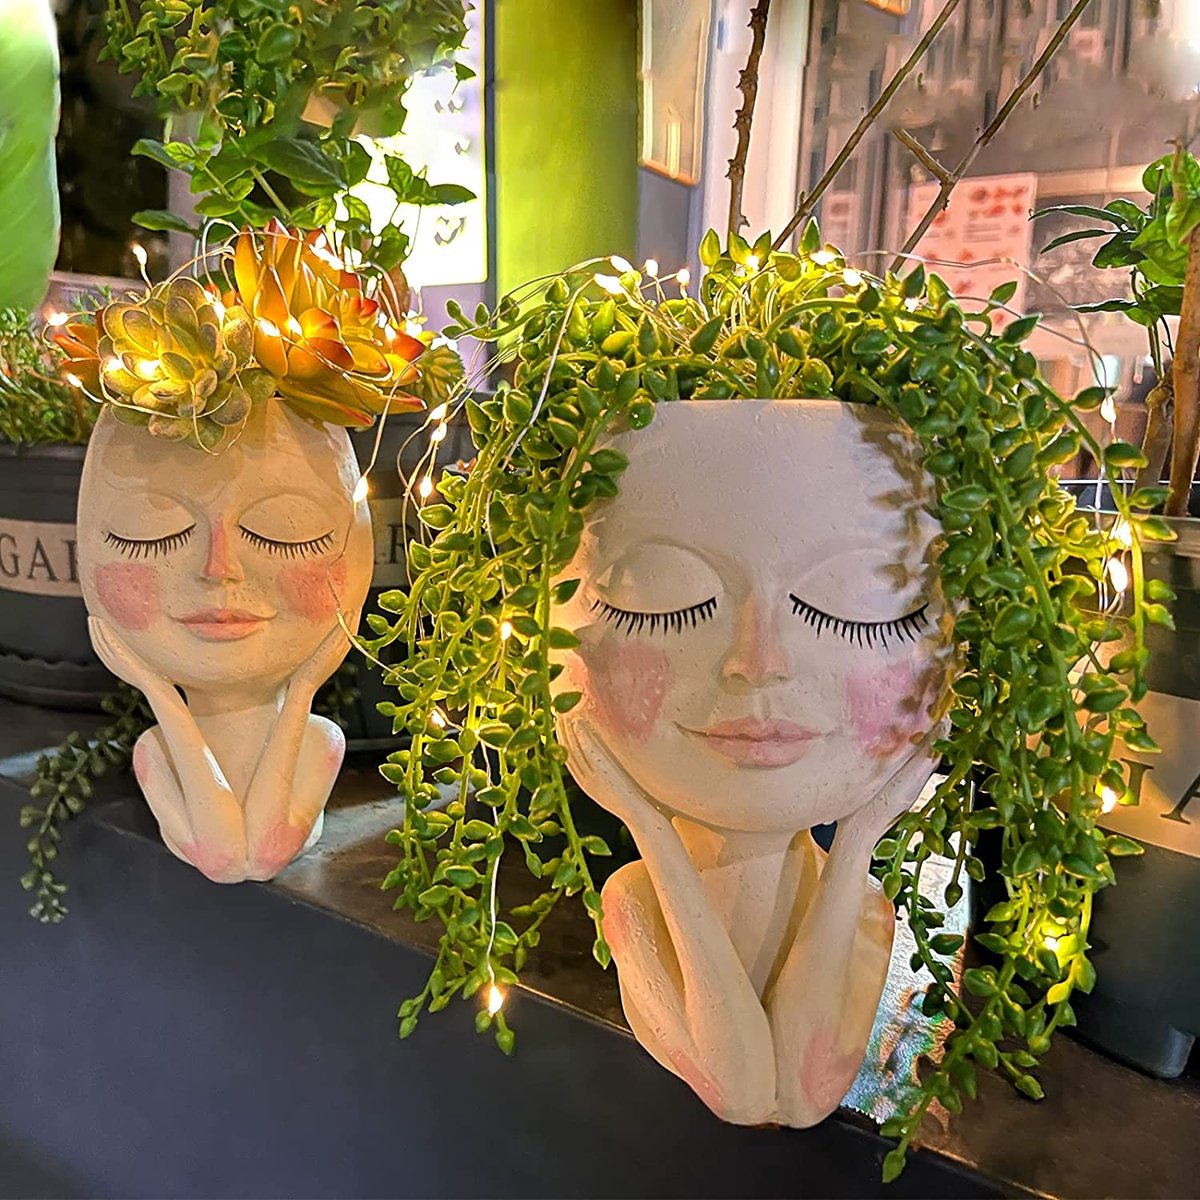 Pot de fleurs unique avec visage et yeux fermés - Pot en résine